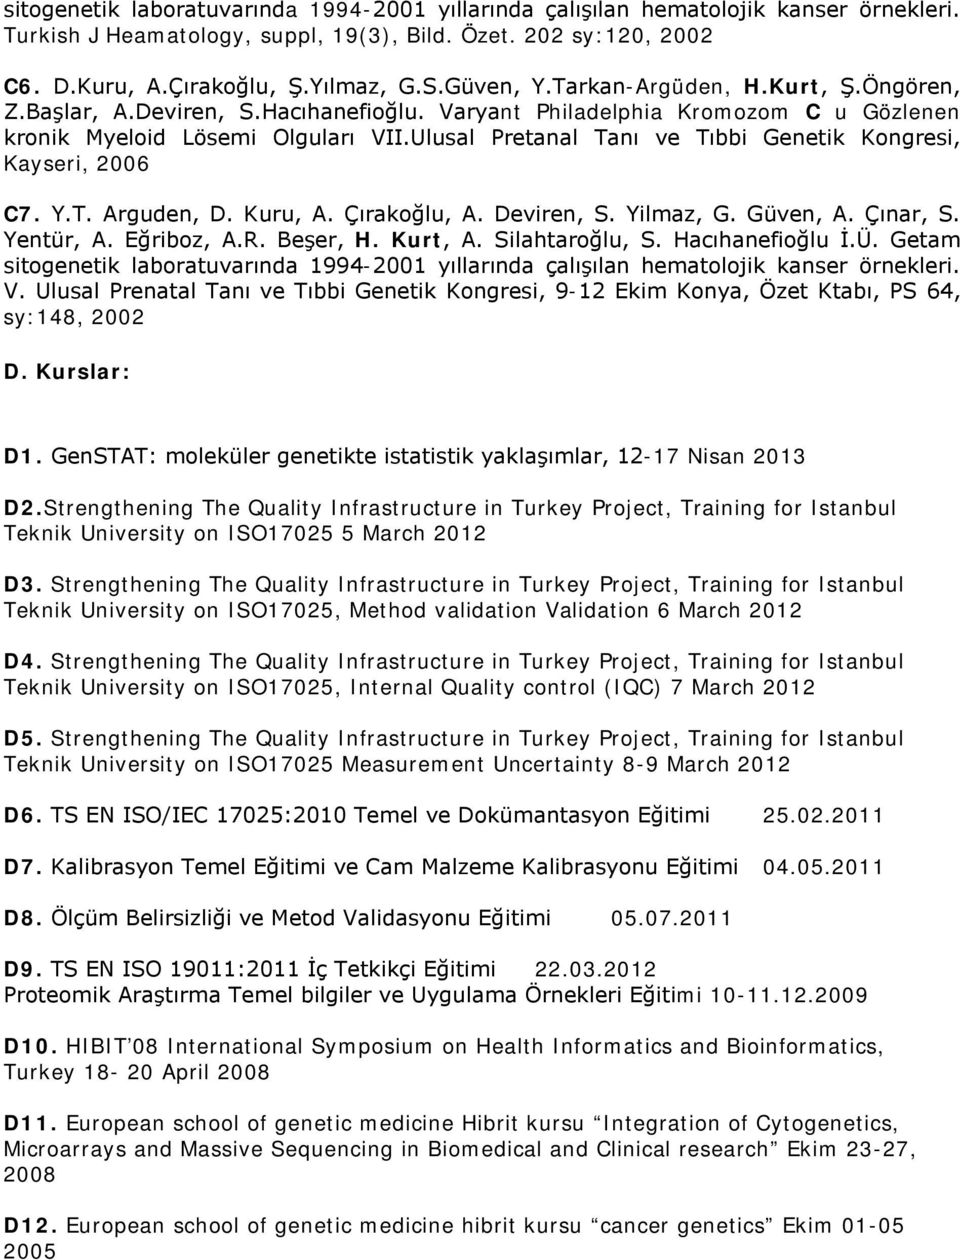 Ulusal Pretanal Tanı ve Tıbbi Genetik Kongresi, Kayseri, 2006 C7. Y.T. Arguden, D. Kuru, A. Çırakoğlu, A. Deviren, S. Yilmaz, G. Güven, A. Çınar, S. Yentür, A. Eğriboz, A.R. Beşer, H. Kurt, A.